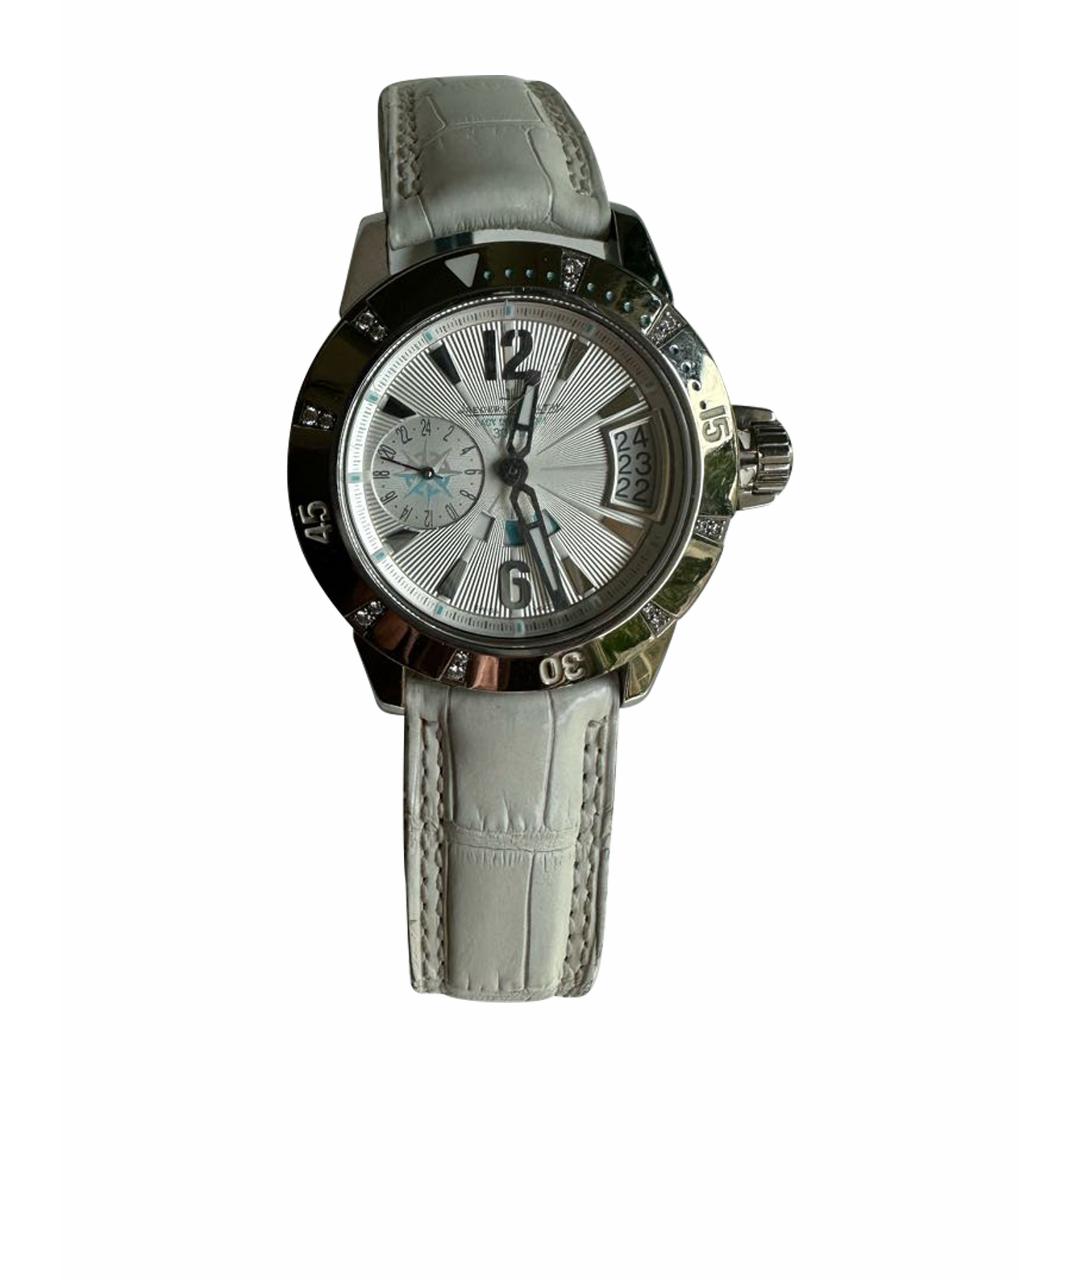 Jaeger LeCoultre Белые часы, фото 1